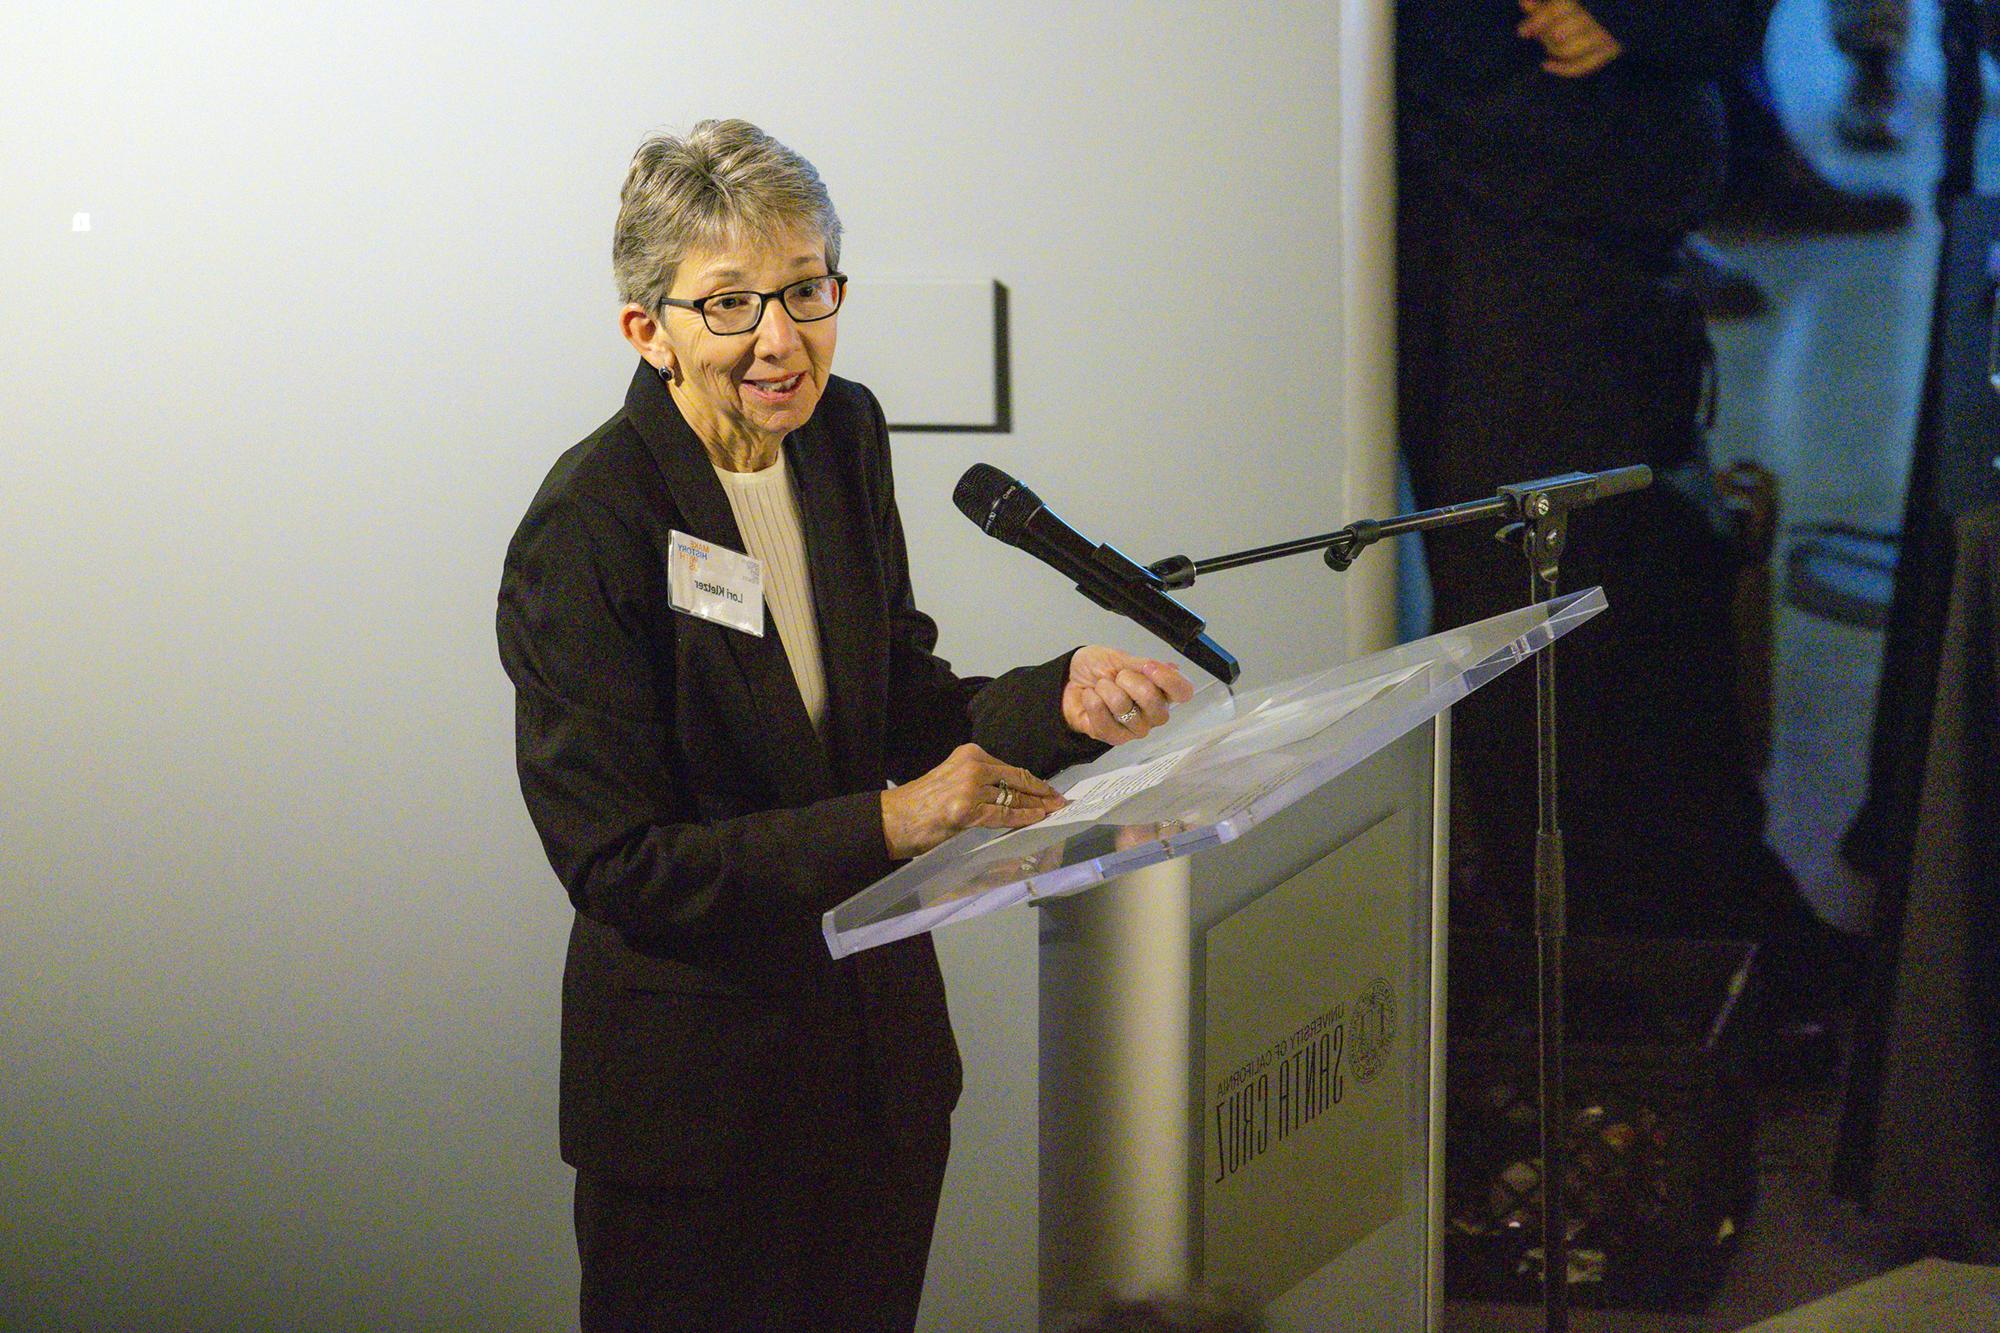 Lori Kletzer speaking at a podium